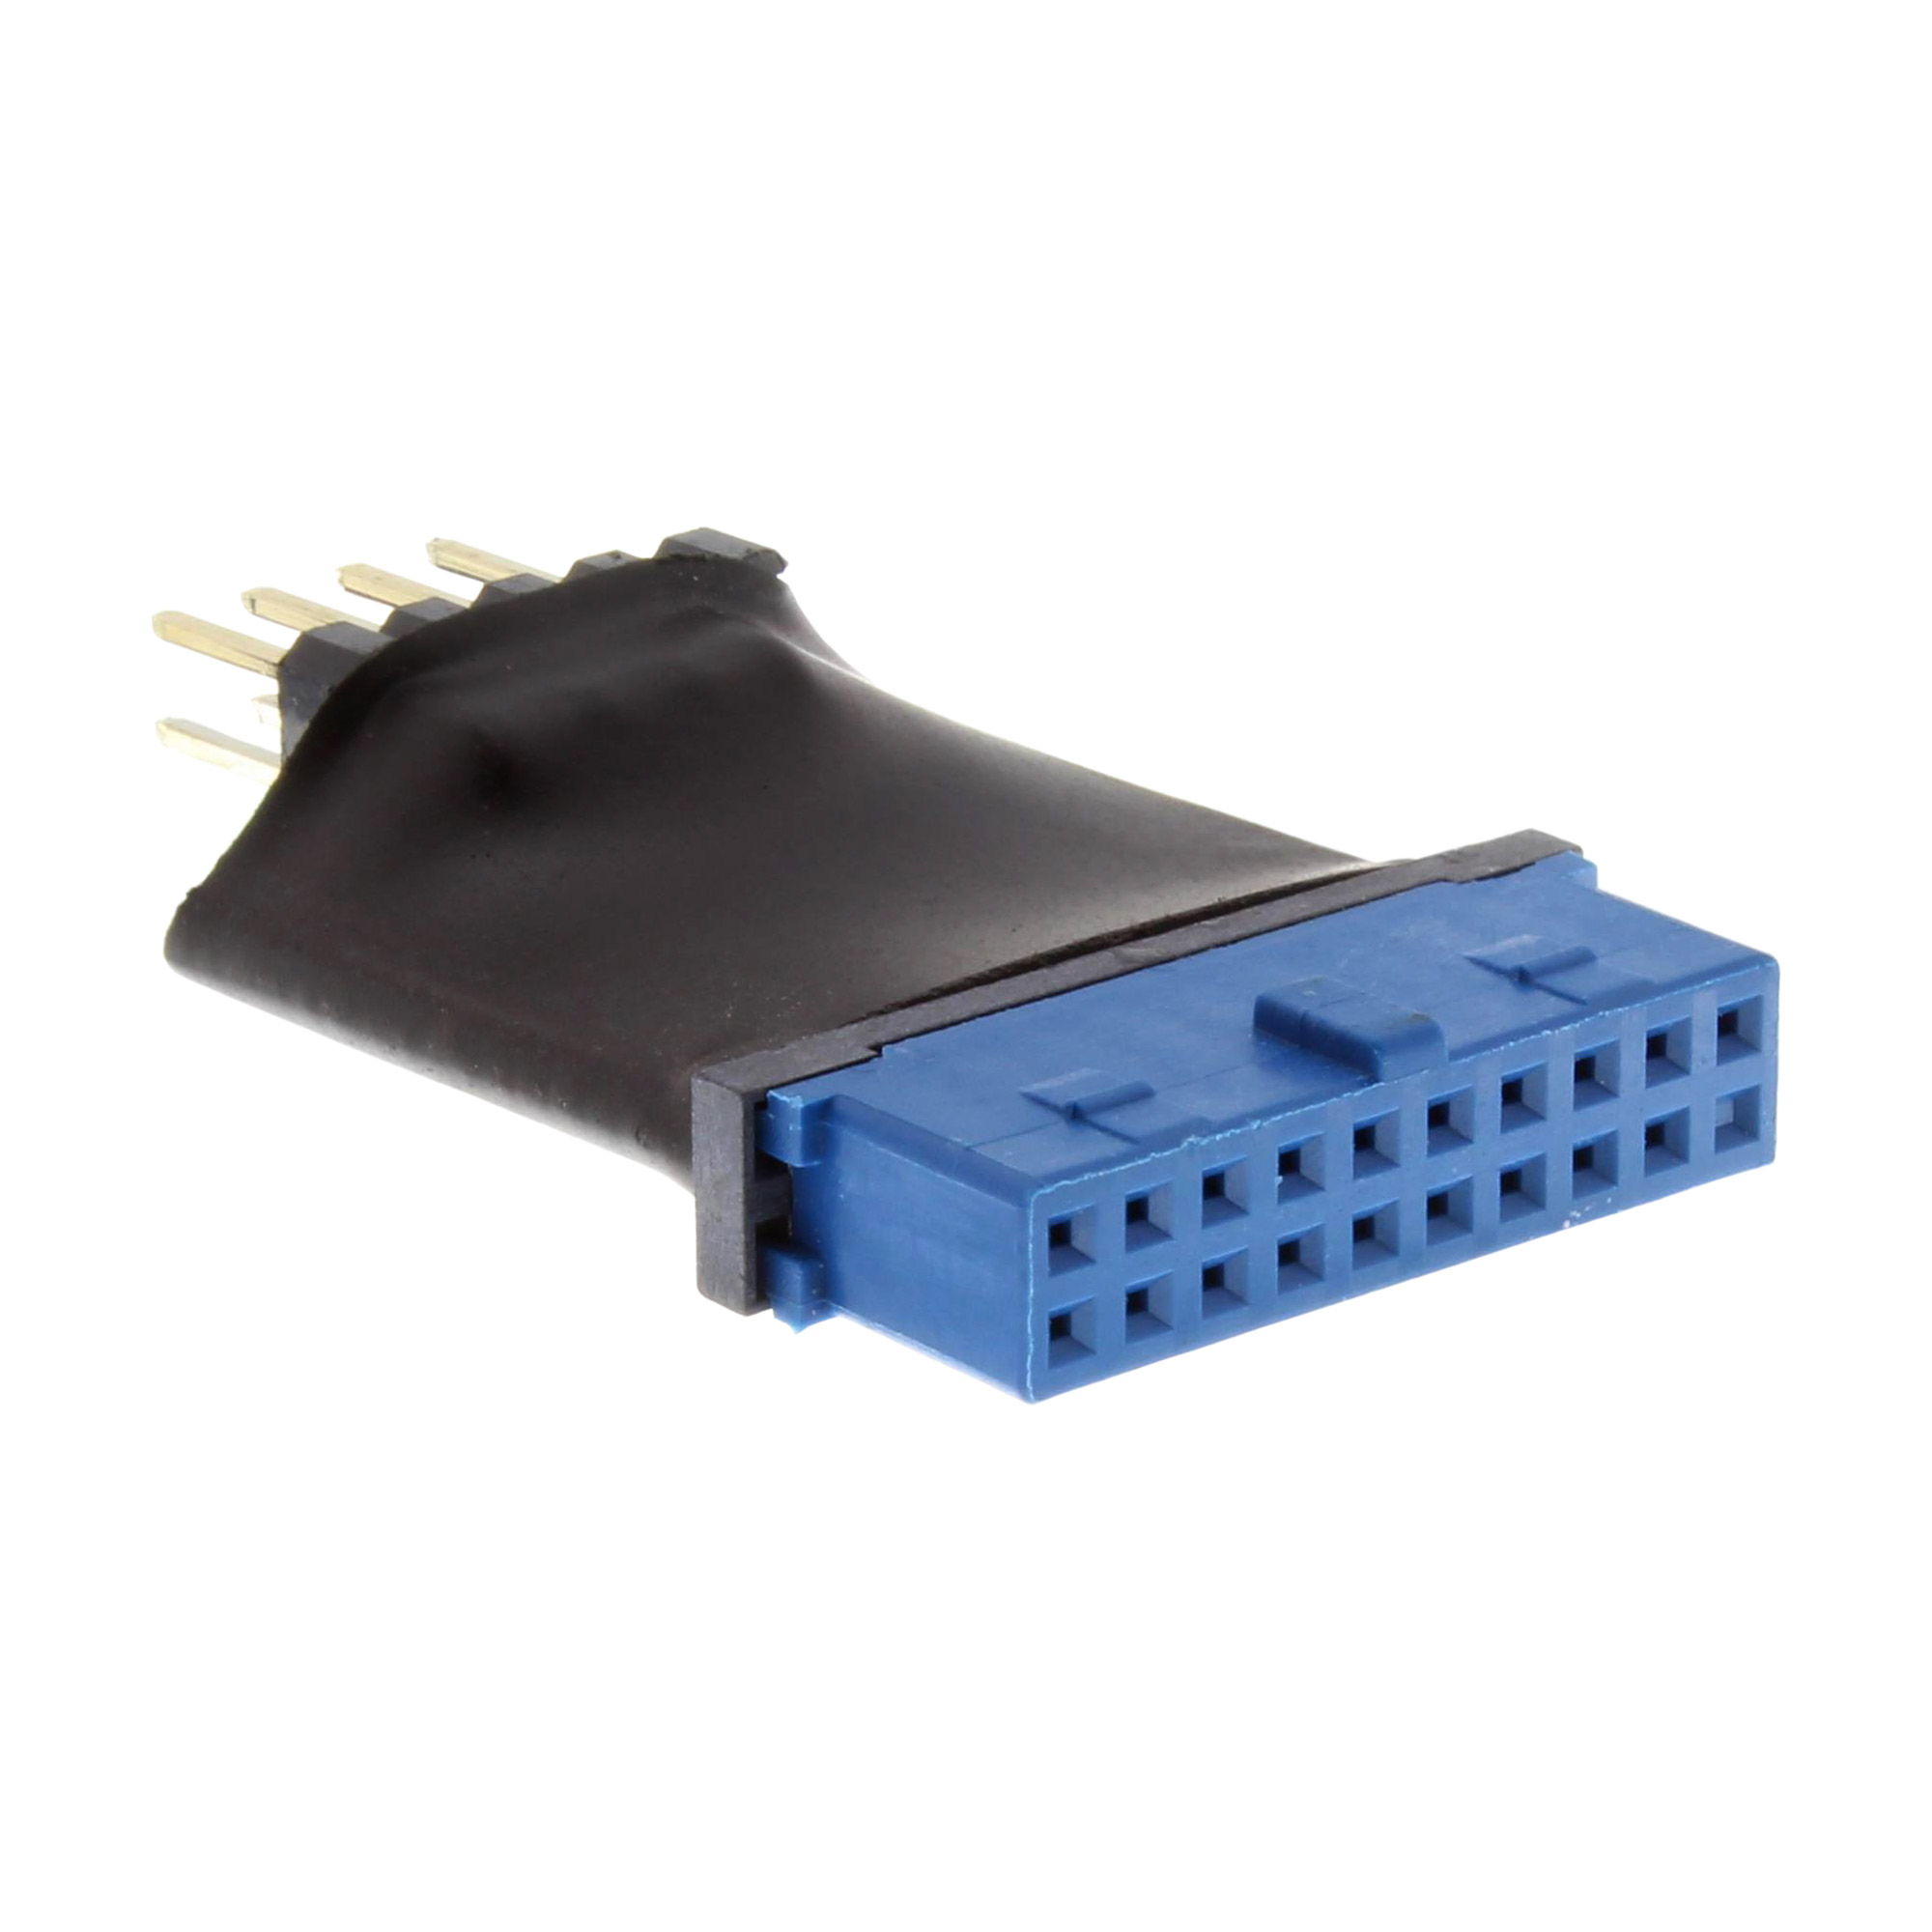 InLine® USB 3.0 zu 2.0 Adapter intern, USB 3.0 19pin auf USB 2.0 Pfostenstecker